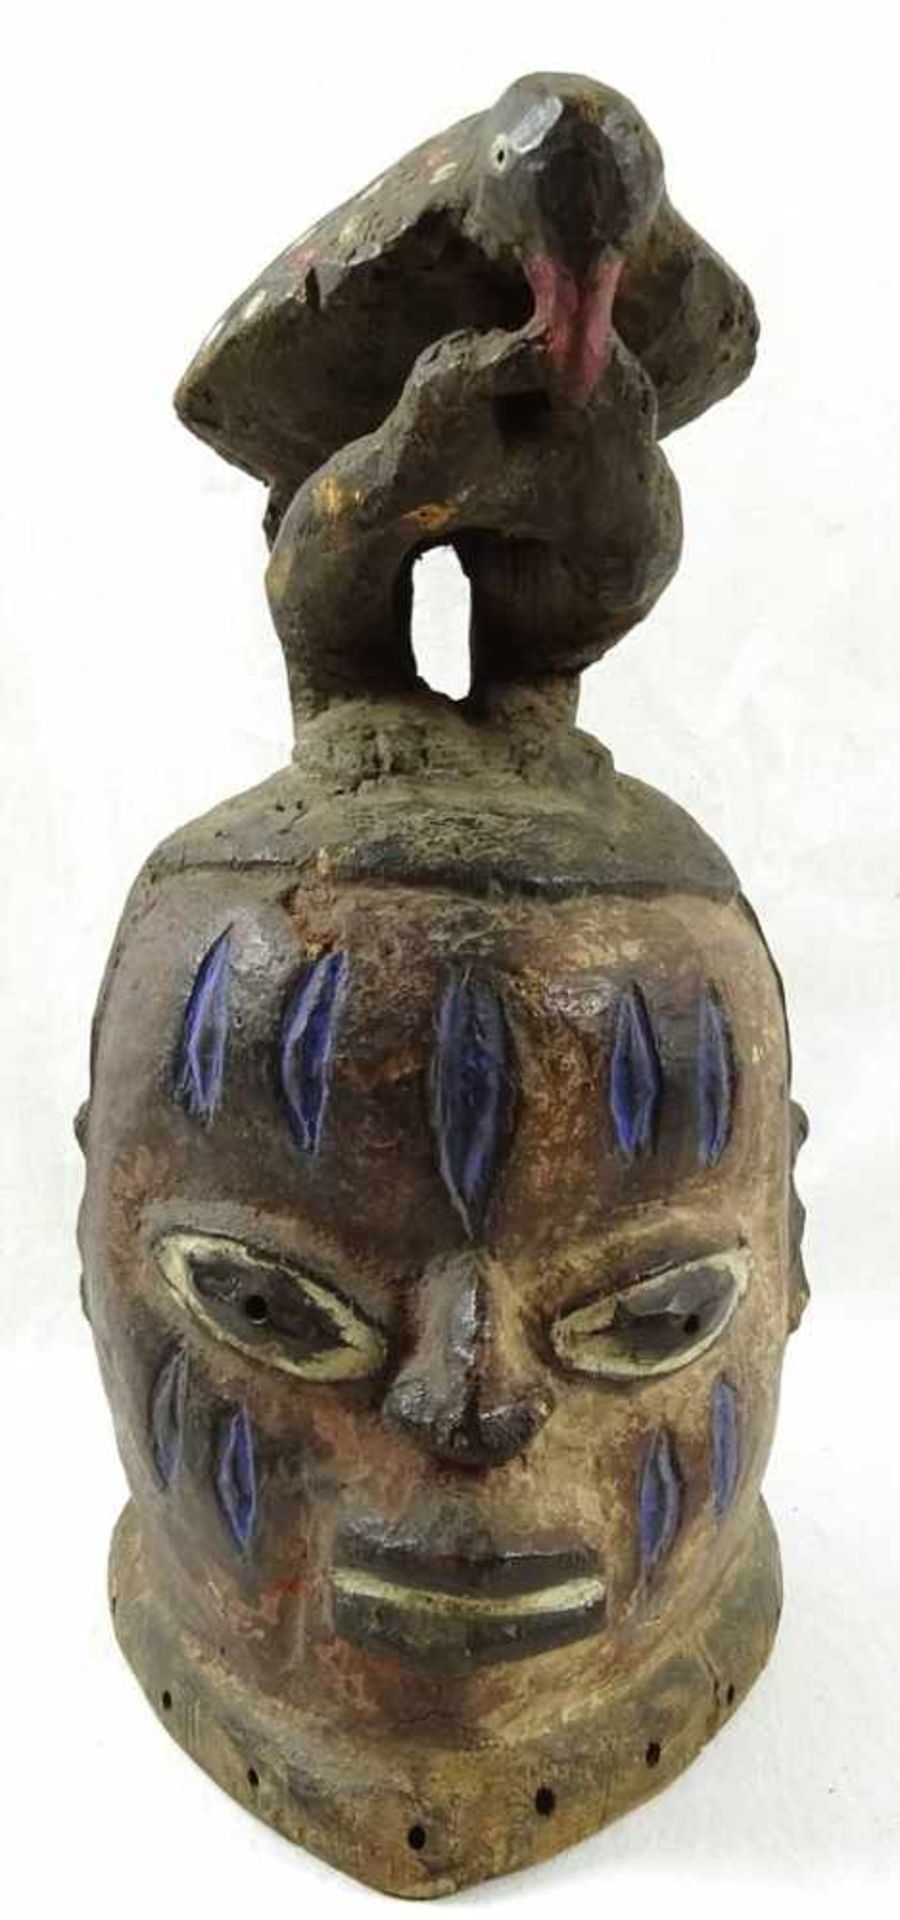 Helmmaske der Yoruba / Gelede, Nigerialeichtes Holz, aus Harzer Privatsammlung, altersgemäß guter